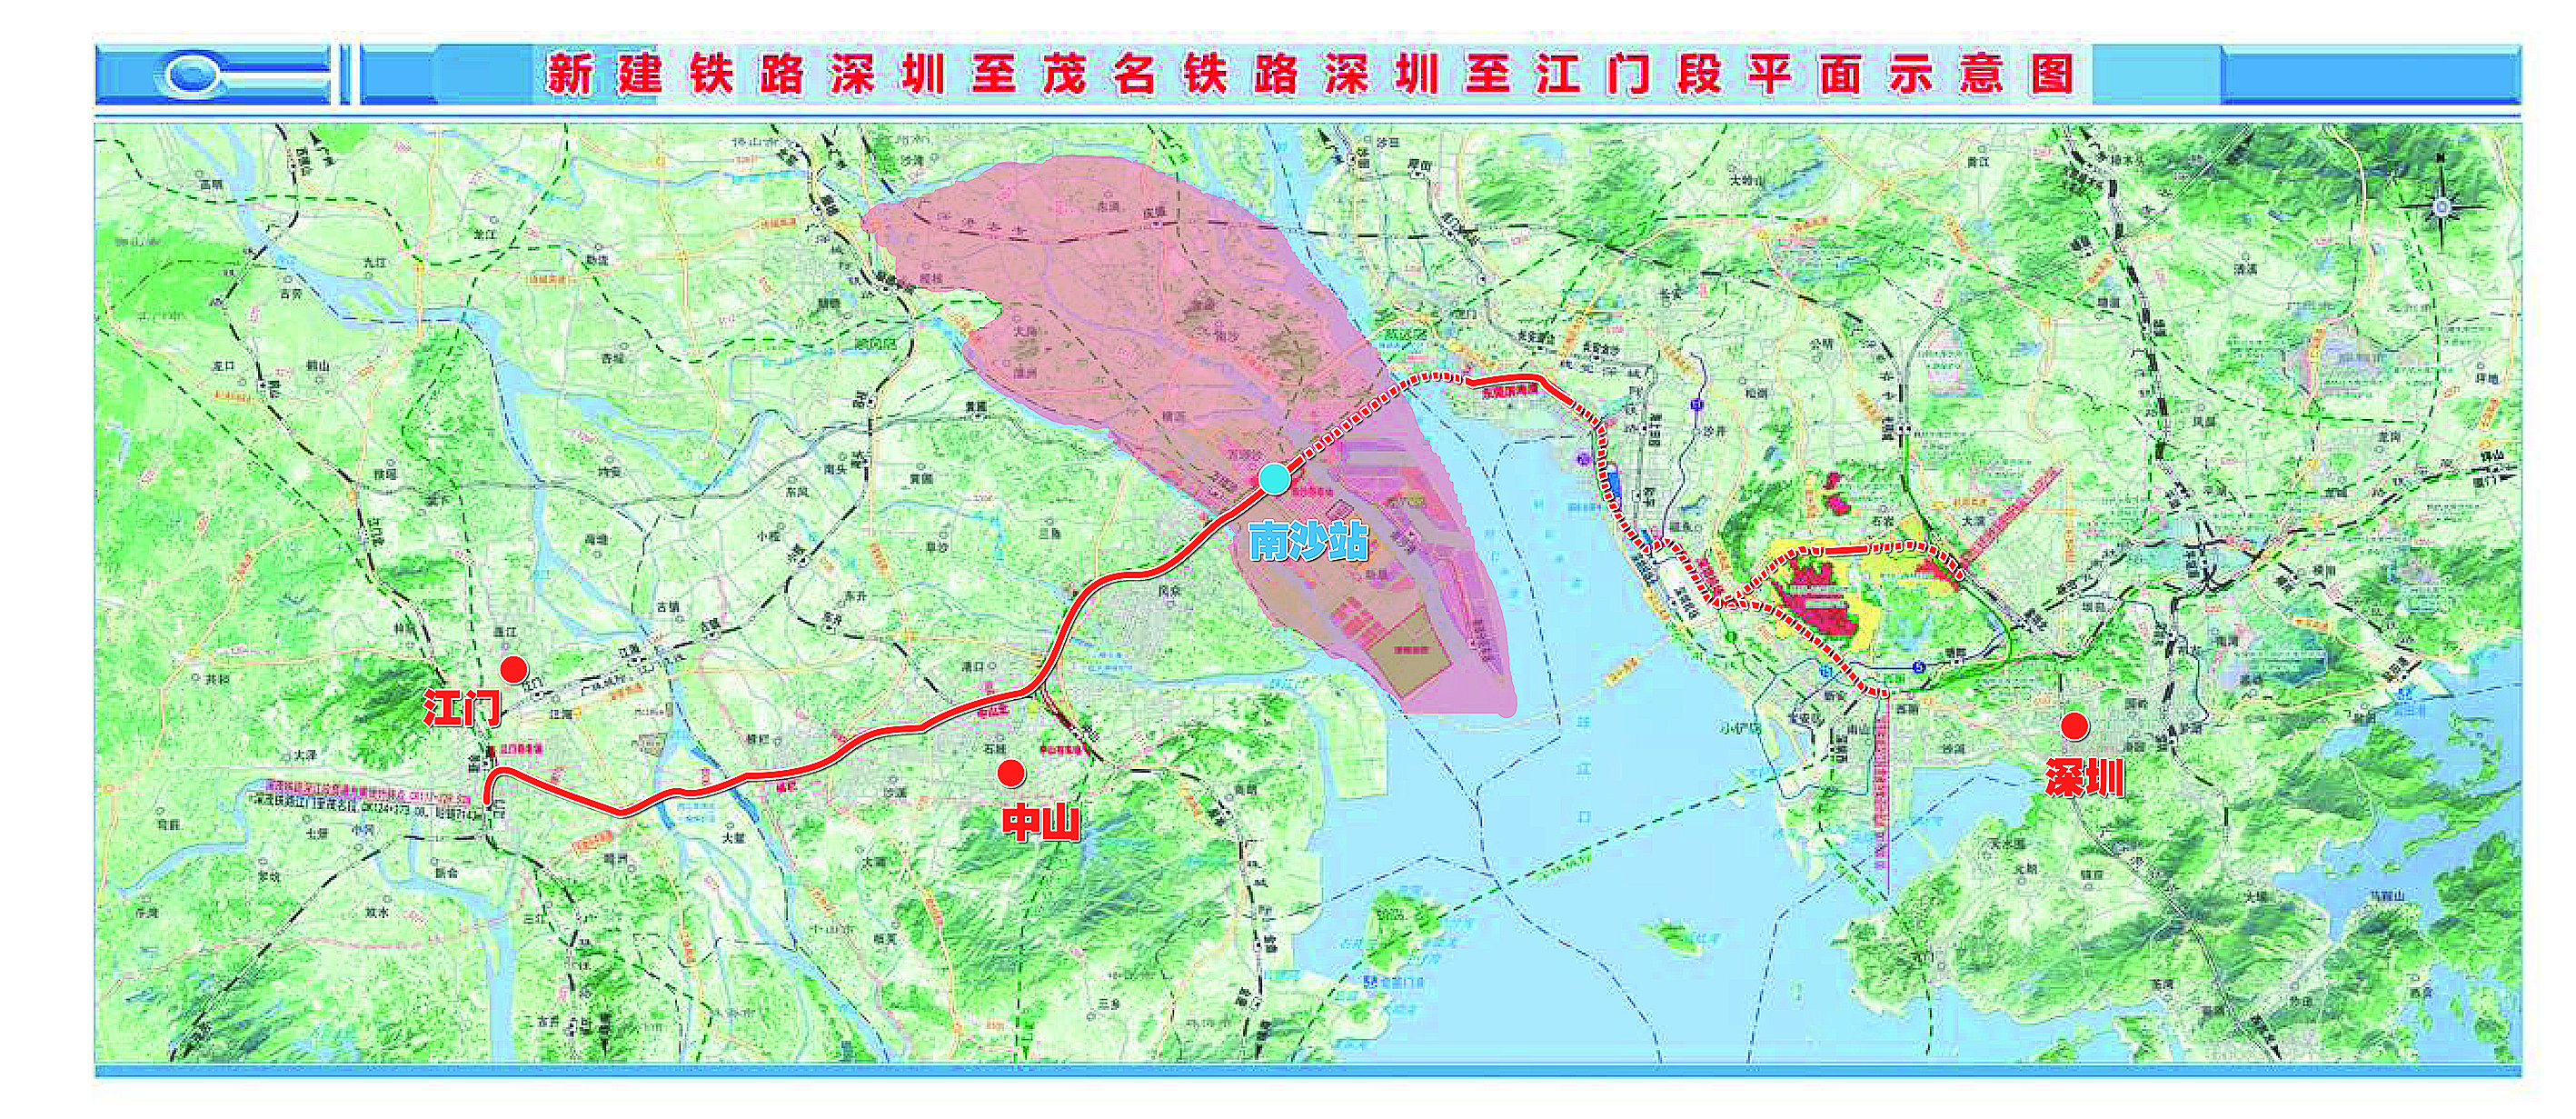 近日,广东深茂铁路有限责任公司公示了新建铁路深圳至茂名铁路深圳至